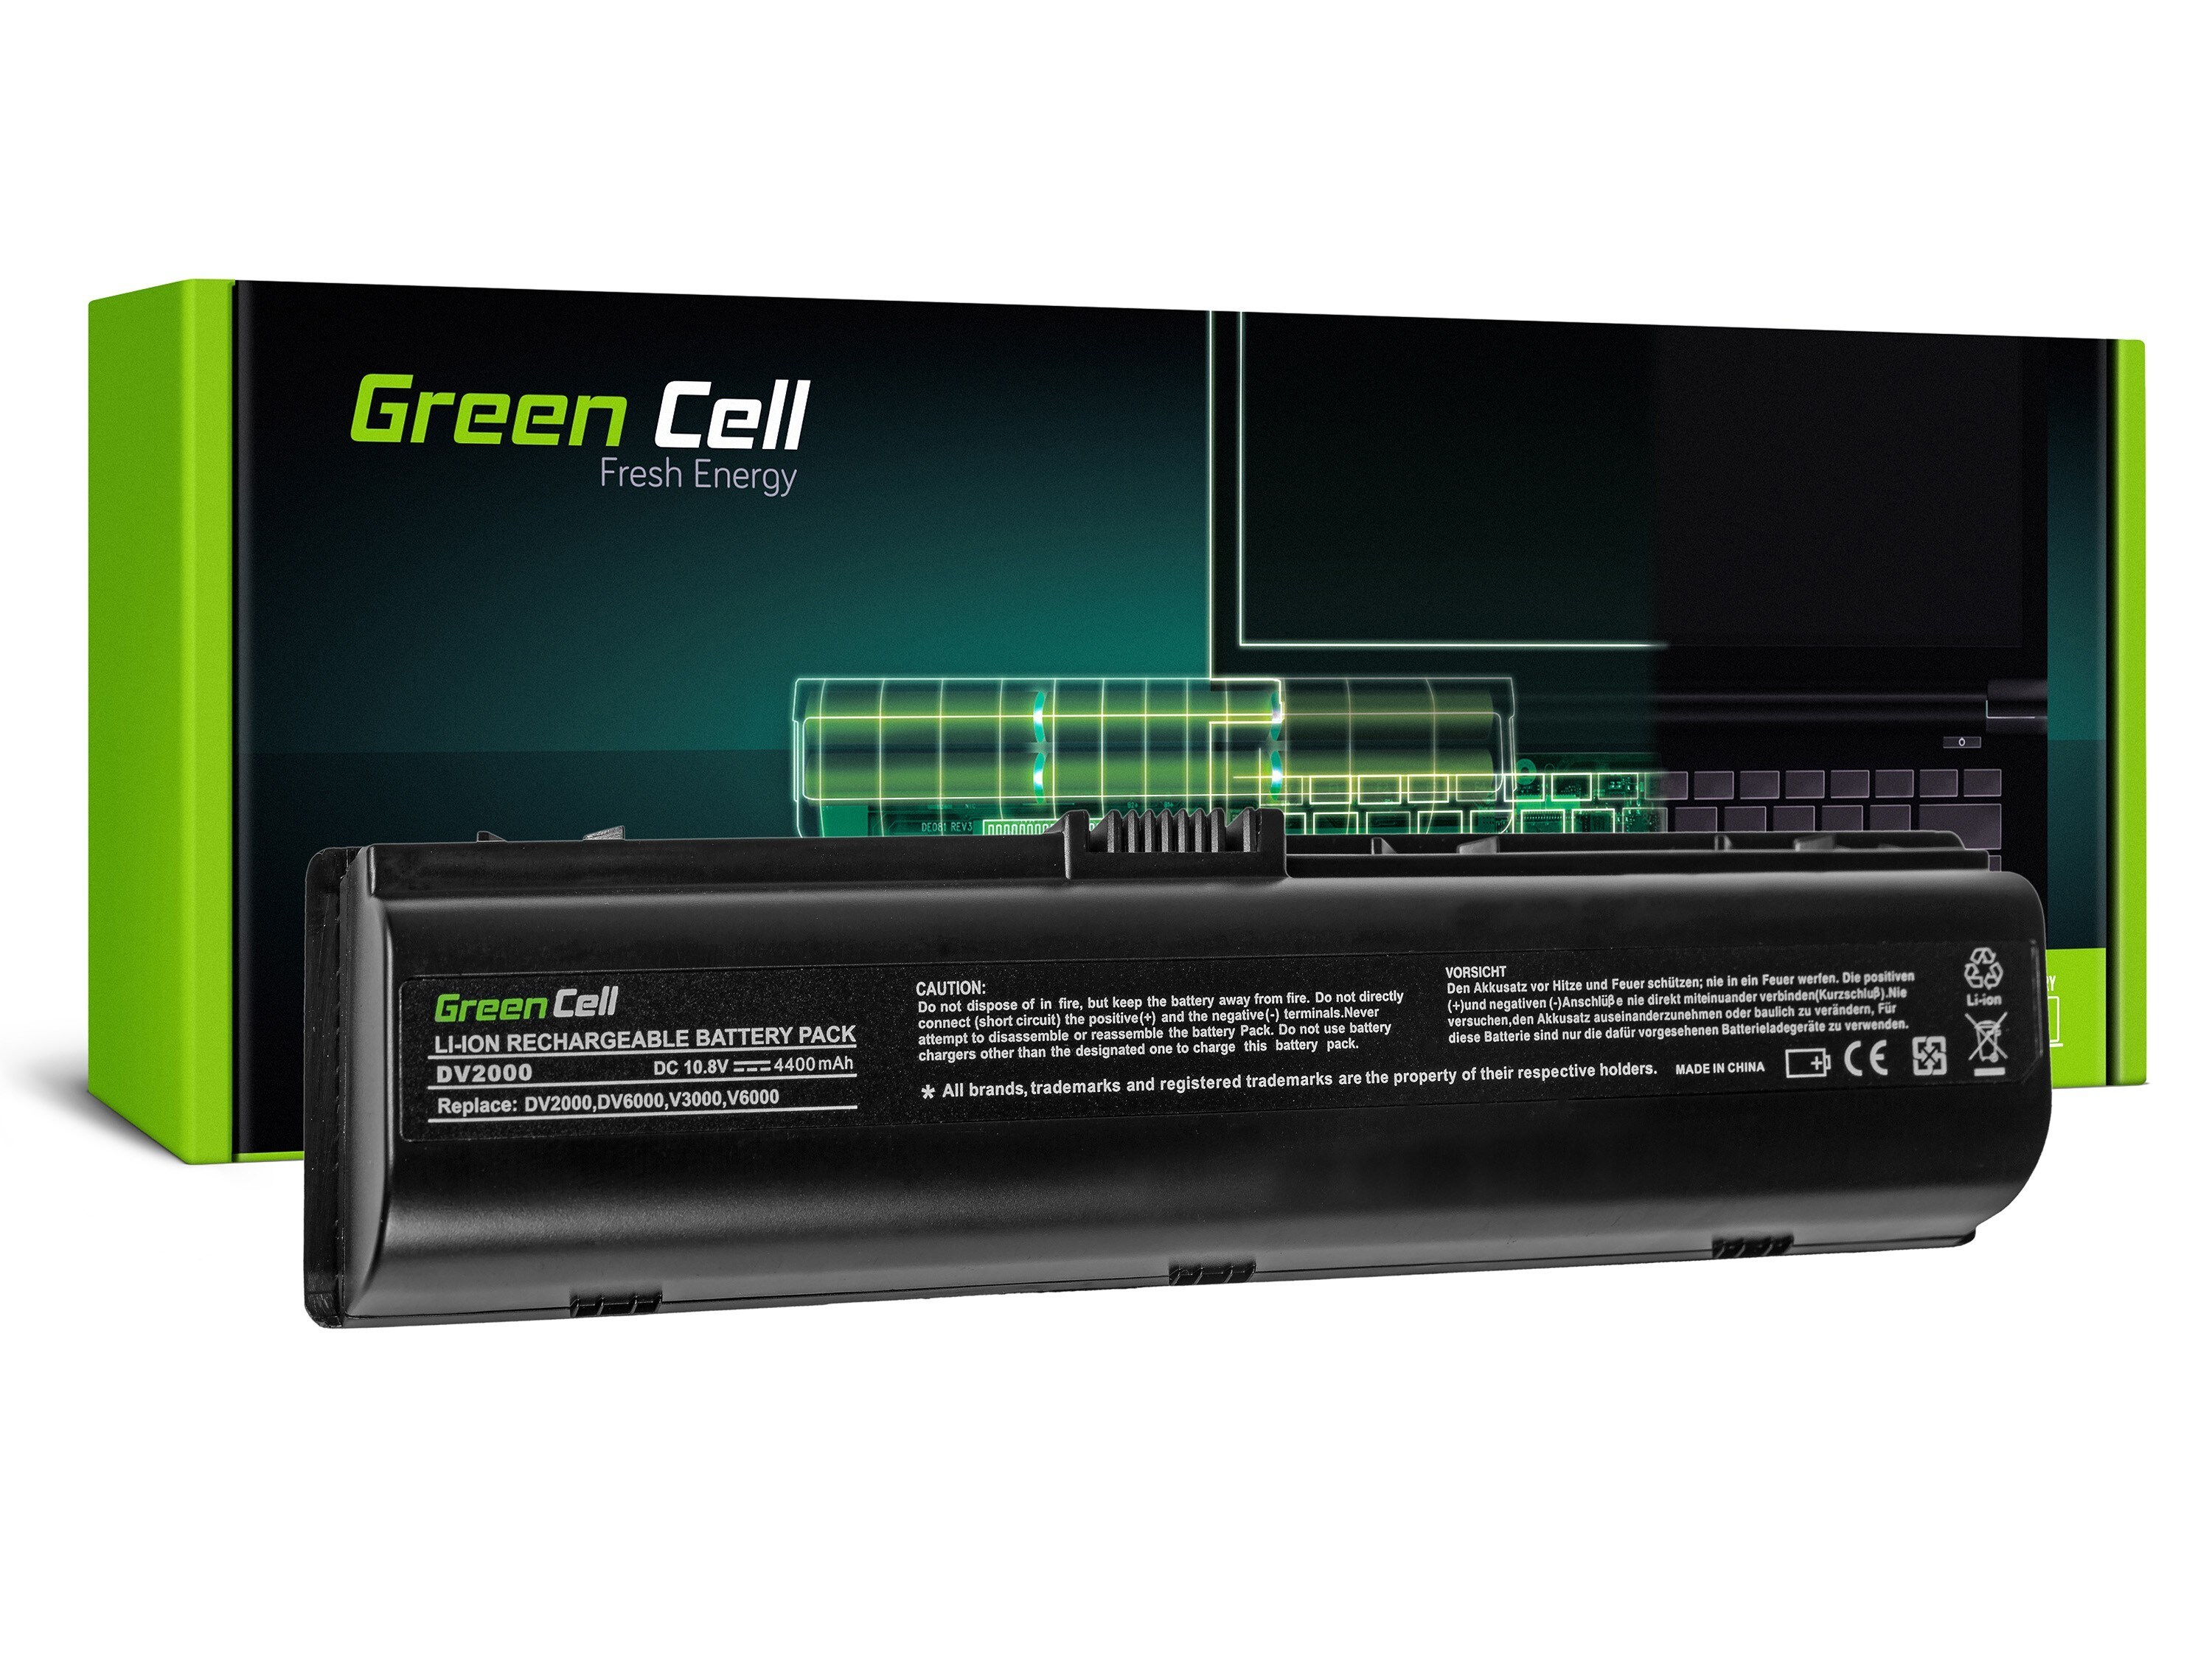 Green Cell laptopbatteri til HP Pavilion DV2000 DV6000 DV6500 DV6700